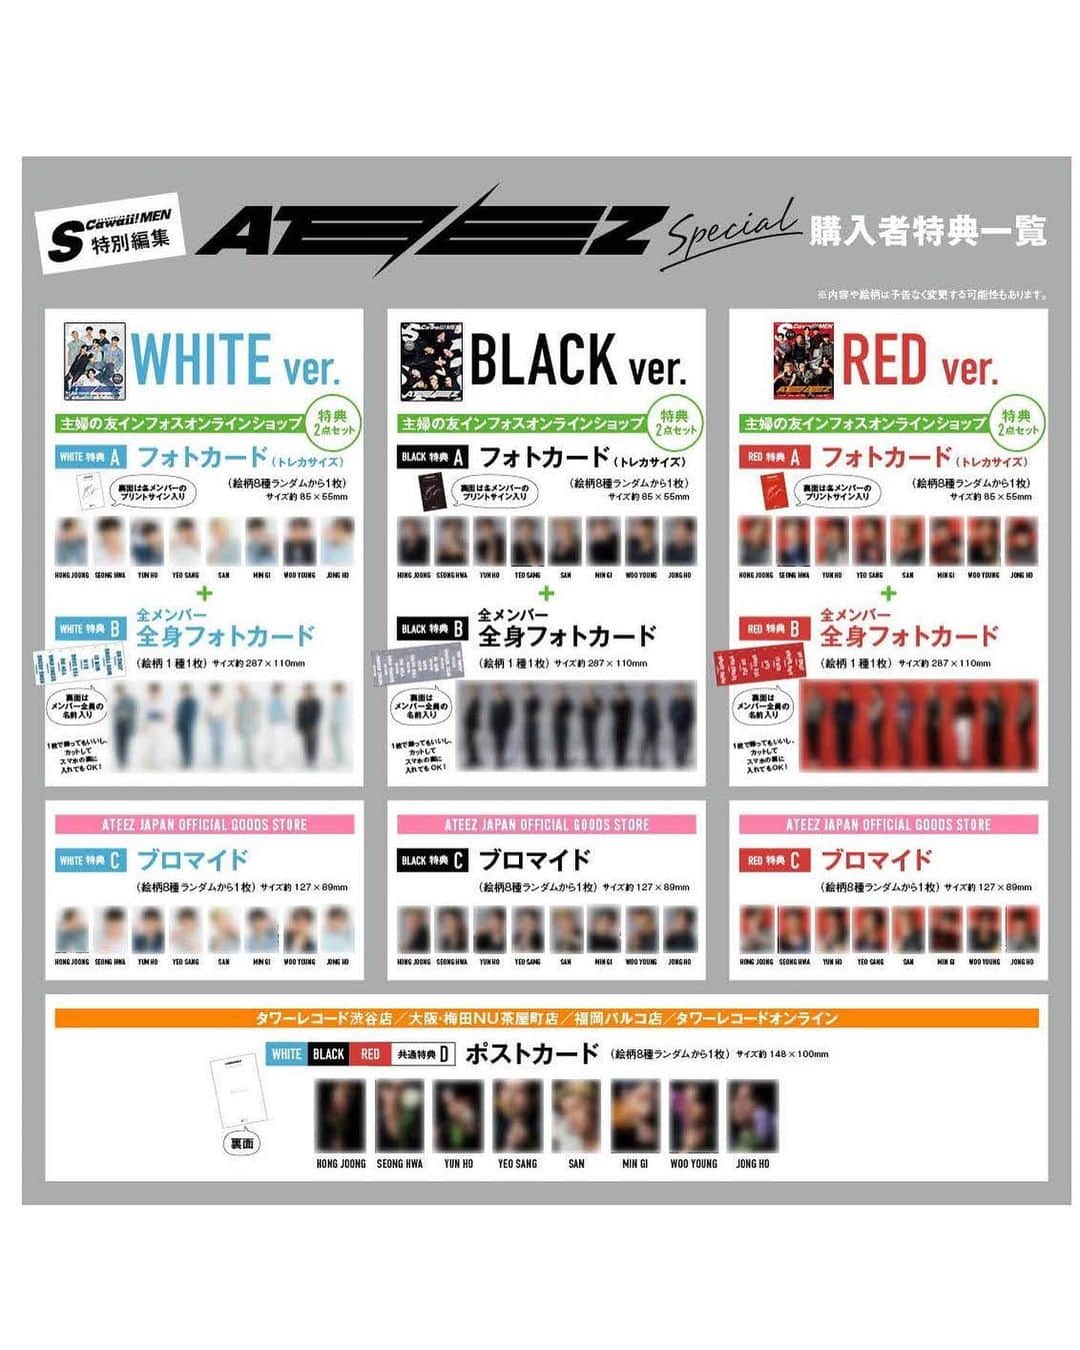 S Cawaii！さんのインスタグラム写真 - (S Cawaii！Instagram)「丸ごと１冊ATEEZ特集！　 『S Cawaii! MEN特別編集 ATEEZ Special』   「WHITE」「BLACK」「RED」の３バージョンを同時発売！   ■ATEEZが日本の雑誌のカバーに初登場！  ■丸ごと１冊、ATEEZ特集！　ALL撮りおろし！  ■表紙は豪華３バージョン（「WHITE ver.」「BLACK ver.」「RED ver.」）   ■「表紙・裏表紙」に加えて、巻頭の「グラビア」「グループインタビュー」｢サイン入りチェキプレゼント｣の合計25ページ分のビジュアルが３バージョン違います。 （それ以外は３バージョン共通です）  ■（３バージョン合計で）約370カットの撮りおろし画像を掲載！  ■巻頭グラビアは、切り取ってピンナップ風に使用可能。  ■表紙３バージョン×各16枚＝合計48名様にサイン入りチェキプレゼントもあり。  ■約5万字にもおよぶ、ボリュームたっぷりのインタビュー！ （インタビュー内容は、３バージョン共通） ＿＿＿＿＿＿＿＿＿＿＿＿＿＿   グループインタビューの一部を少しだけ公開！　 今回の丸ごと１冊ATEEZ特集号は、ATINY（ファンの愛称）の皆さんのリクエストで実現したということをメンバーの皆さんにお伝えしました。  Q.今日はありがとうございました！　撮影はいかがでしたか？  WOO YOUNG：デビュー後、日本で初めて受けた取材が『S Cawaii!』さんだったので、今回また一緒にお仕事することができて、うれしかったですし、今日も楽しい思い出がたくさん作れました。日本にいるATINY（ファンの愛称）のみなさんのおかげでこうしてまた、取材していただくことが出来たと思うので、ATINYのみなさんに感謝しています。  JONG HO：僕もとても楽しく撮影することができました！  SAN：（うんうん、とうなずいて）まるまる１冊、僕たちだけの雑誌なので、僕たちのことが恋しくなった時、手に取っていただいて、じっくりと読み返していただけたら嬉しいです。  SEONG HWA：一冊丸ごと「ATEEZ特集」の雑誌を作っていただけてとてもありがたいですし、特別な経験になりました。そしてかっこいい写真もたくさん撮れたので、僕も『S Cawaii! MEN 特別版 ATEEZ Special』がとても楽しみです！  YUN HO：本当にすごくステキな写真が撮れました！　僕たちだけでなく、たくさんの方が苦労して作り上げた成果物なので、いい雑誌になっていると確信しています。（日本語で）ありがとうございます。  MIN GI：久しぶりに日本に来て、こうして雑誌の撮影もして、対面で初の単独コンサートもして、とても楽しい日々を過ごすことができました。これからも日本にたくさん来て、日本の皆さんに幸せを届けられる時間が増えたらいいな、と改めて思いました。  HONG JOONG：はじめは、「僕たちだけしか出てこない雑誌ってどんなものなのだろう？」と実感が湧きませんでした。特にメンバー自身にフォーカスした写真というのが僕好みでした。３つのコンセプトで写真を撮ったので、皆さんは24人分のATEEZをお楽しみいただけます！（笑）　そういう意味でもファンの皆さんの期待に応えられる雑誌になったと思います。  YEO SANG：色々なコンセプトに挑戦することができたことが楽しかったです。はじめは薄めのメイクからスタートして、だんだん濃くなっていくのもワクワクしました。現場の雰囲気もとても楽しかったですし、この先ずっと心に残りそうな一日になりました。  SEONG HWA：そうそう。ずっと大切にしまっておけるプレゼントをいただいたような気がします。  ＿＿＿＿＿＿＿＿＿＿＿＿＿＿  下記のECサイト、店舗にて『S Cawaii! MEN特別編集 ATEEZ Special』の「WHITE ver.」「BLACK ver.」「RED ver.」を購入いただいた方に特典を差し上げます！  【特典A フォトカード＋B　全メンバー・全身フォトカード（２点セット）】 ■主婦の友インフォスオンラインショップ   【特典C　ブロマイド】 ■ATEEZ JAPAN OFFICIAL GOODS STORE   【特典D　ポストカード】 ■タワーレコードオンライン ■タワーレコード東京・渋谷店 ■タワーレコード大阪・梅田NU茶屋町店 ■タワーレコード福岡・パルコ店  ＿＿＿＿＿＿＿＿＿＿＿＿＿＿  下記のネット書店、全国の書店でもご購入いただけます。（購入者特典はつきません） （一部、お取り扱いがない店舗もございます）  ■Amazon ■HMV ■セブンネット ■楽天  ※コンビニエンスストアでは販売しておりません。 ※電子書籍の販売の予定はございません。  ★続報は随時、『S Cawaii! MEN』のTwitterで公開いたします。 @mag_scawaii_men  #ateez  #エイティーズ  #scawaiimen  #エスカワイイ  #エスカワ」3月2日 10時00分 - scawaii.magazine